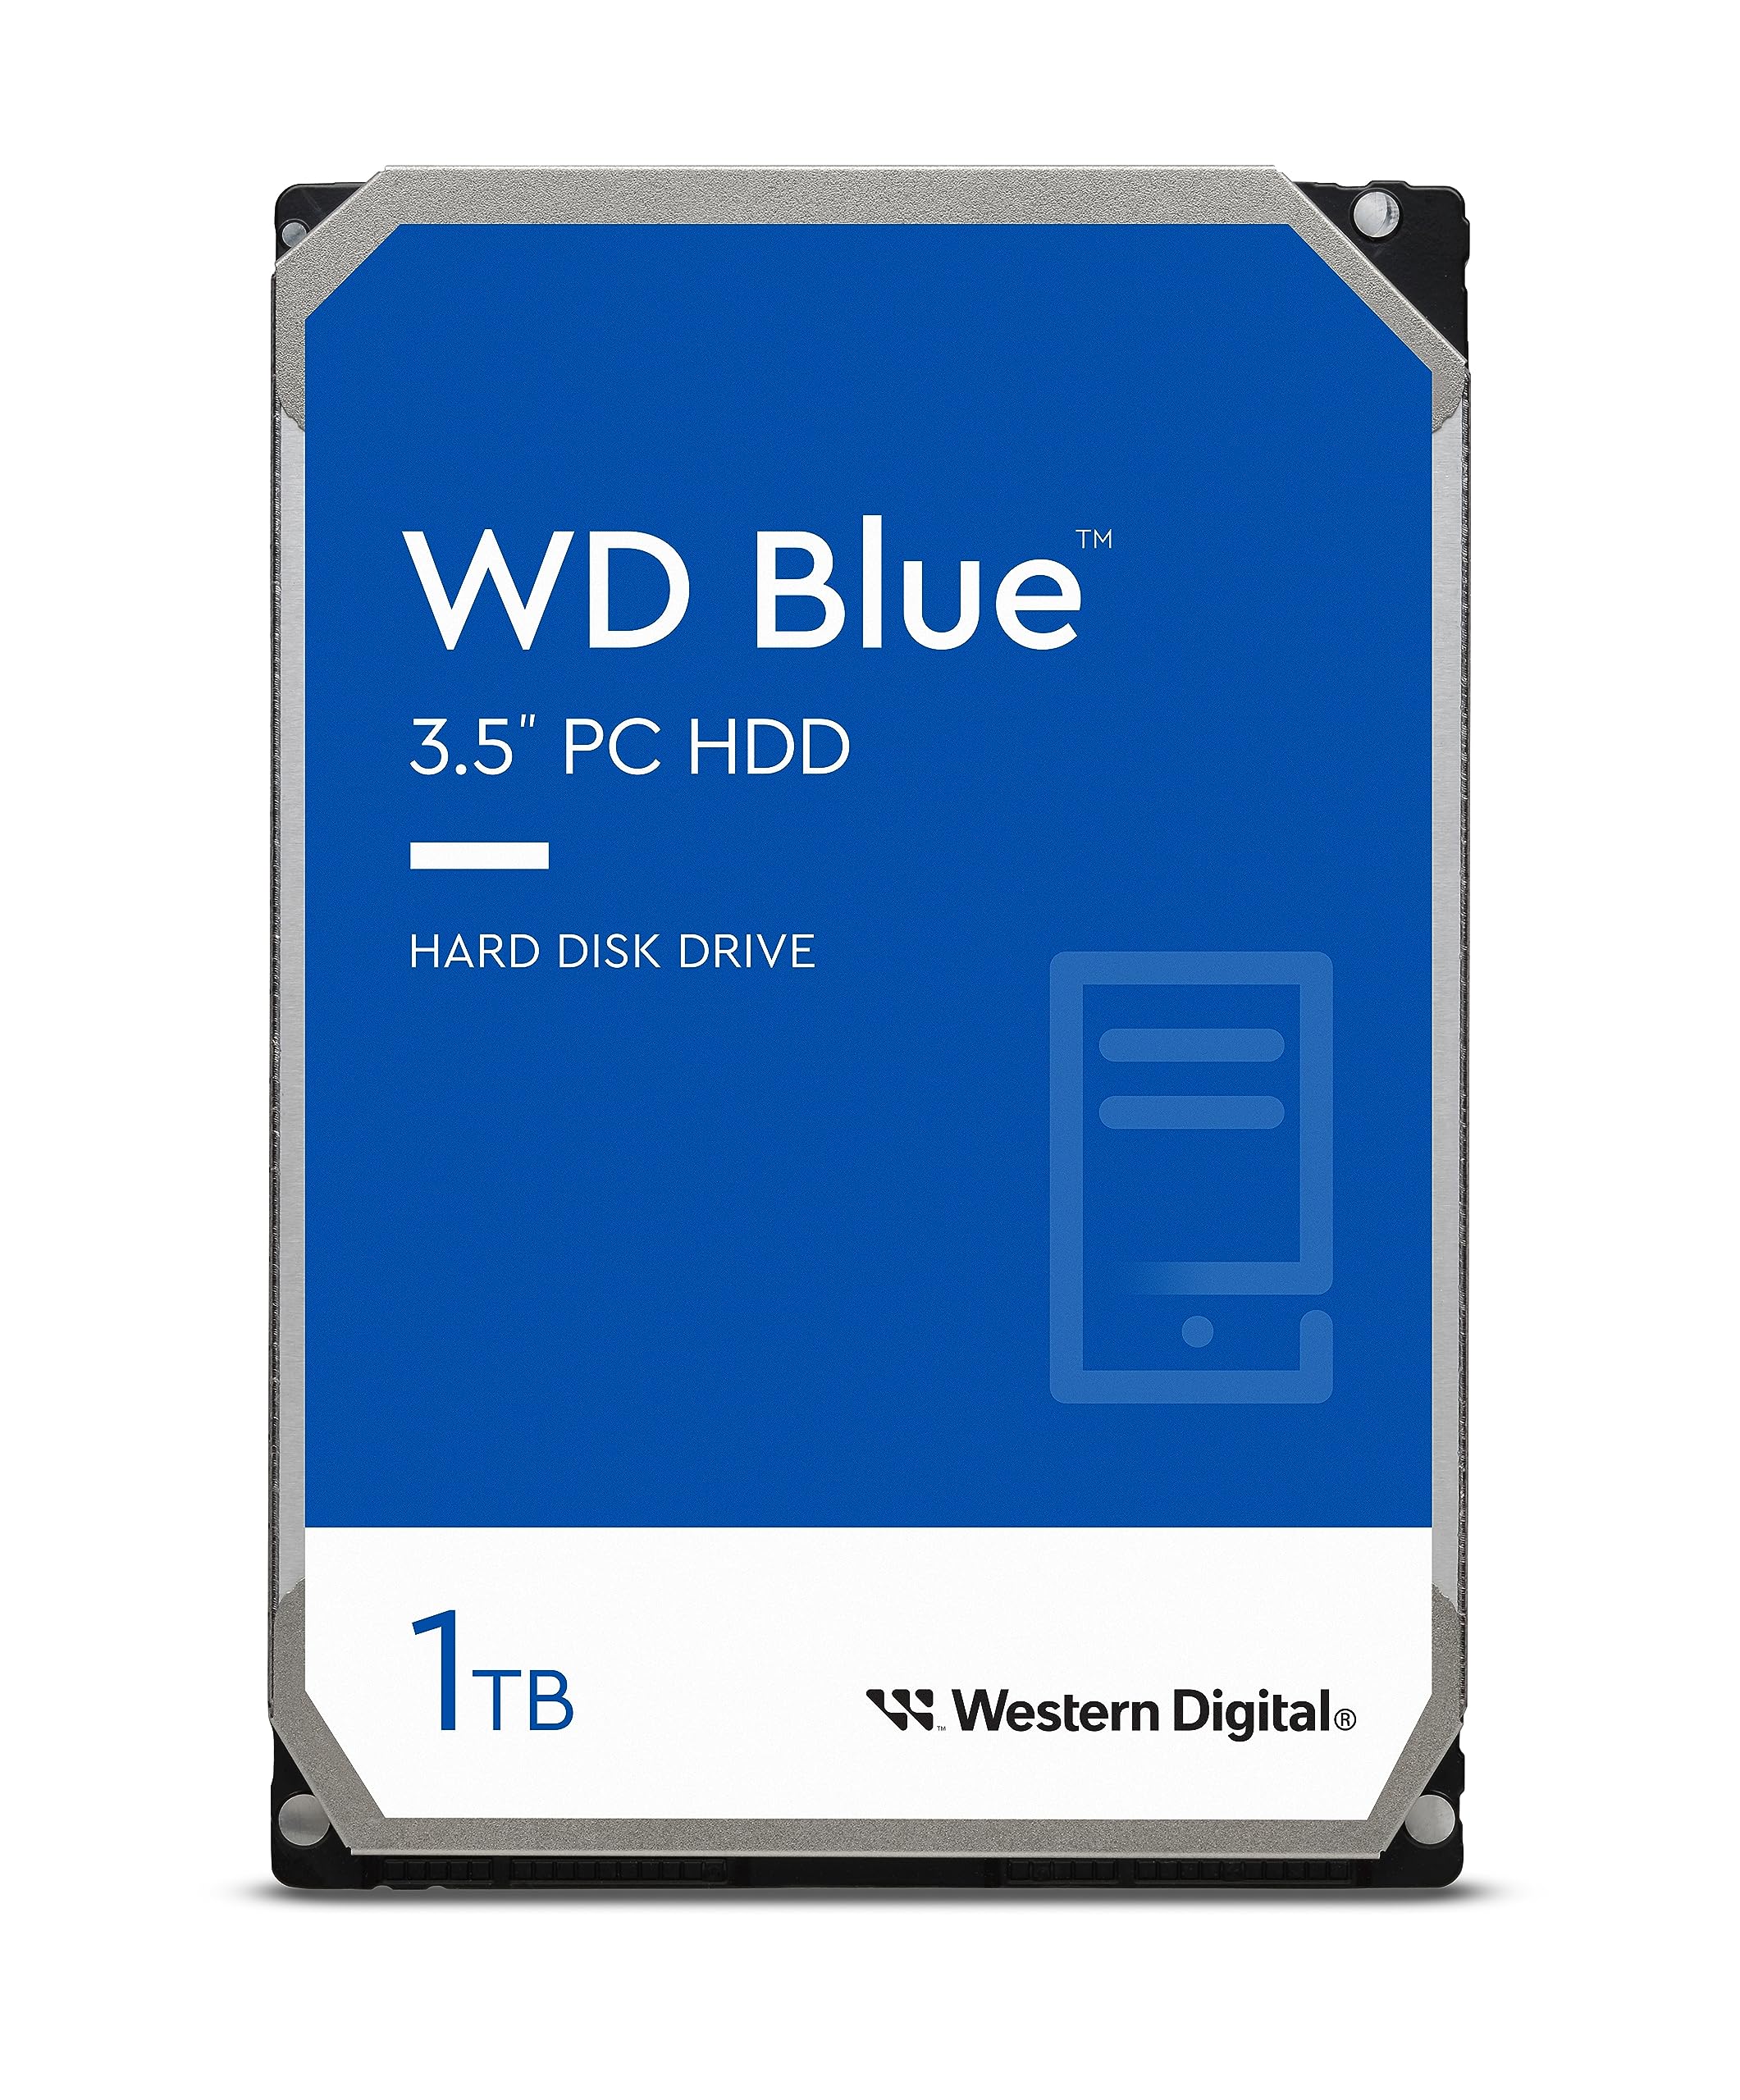 1TB WD Blue PC Internal Hard Drive HDD - 7200 RPM, SATA 6 Gb/s, 64 MB Cache, 3.5" - WD10EZEX $30.87